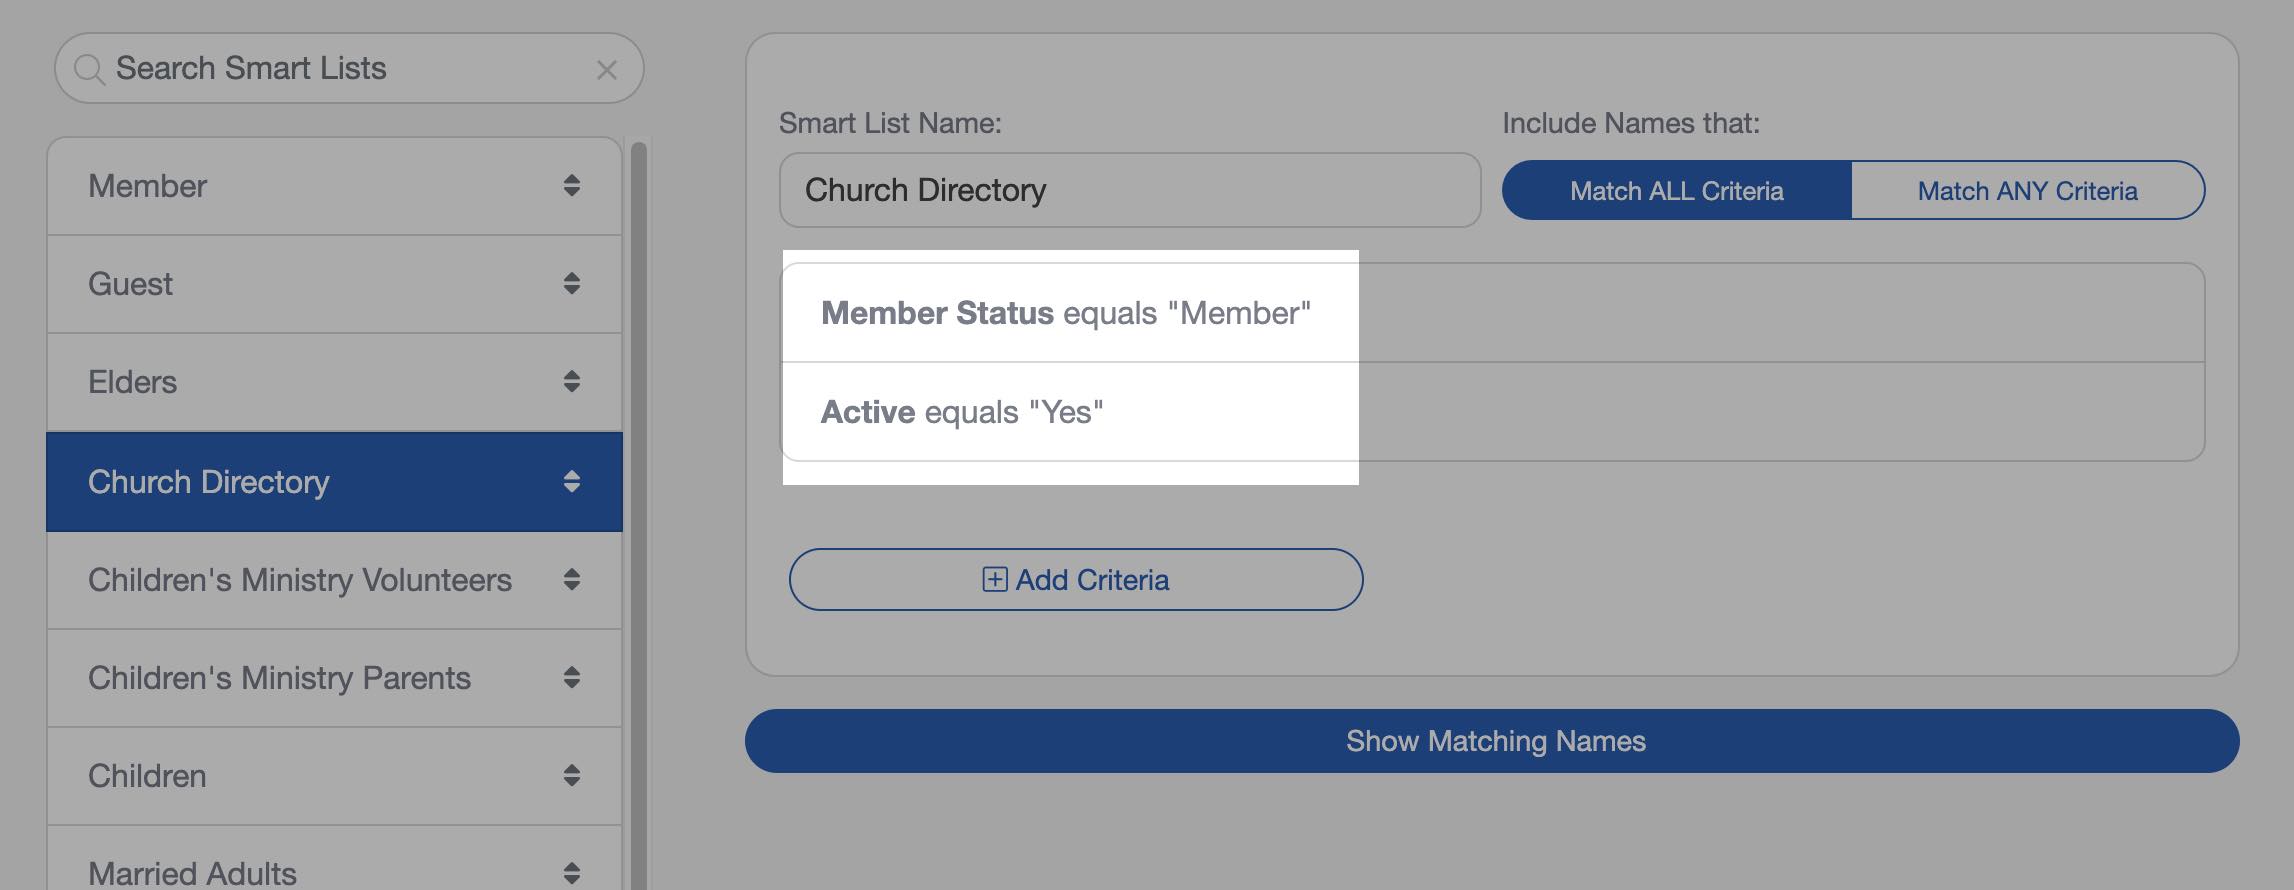 Church Directory Smart List